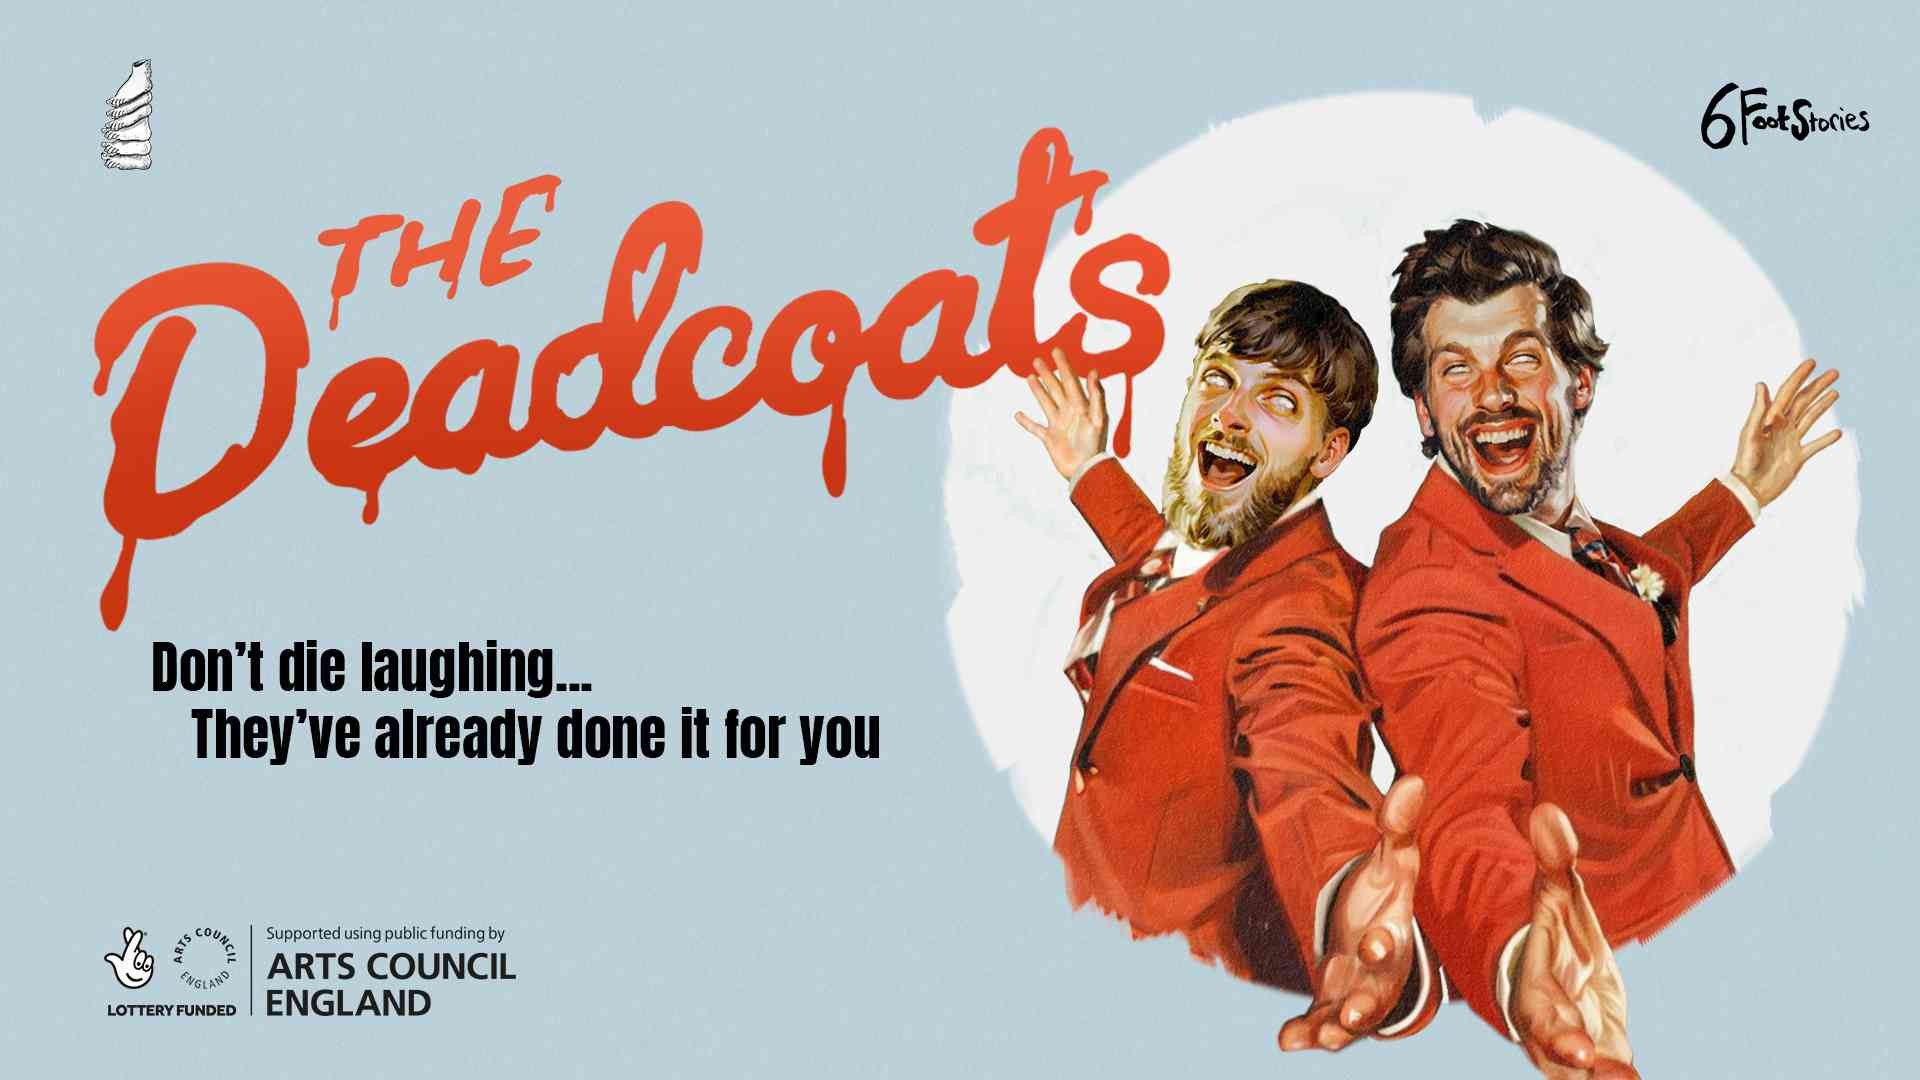 The Deadcoats